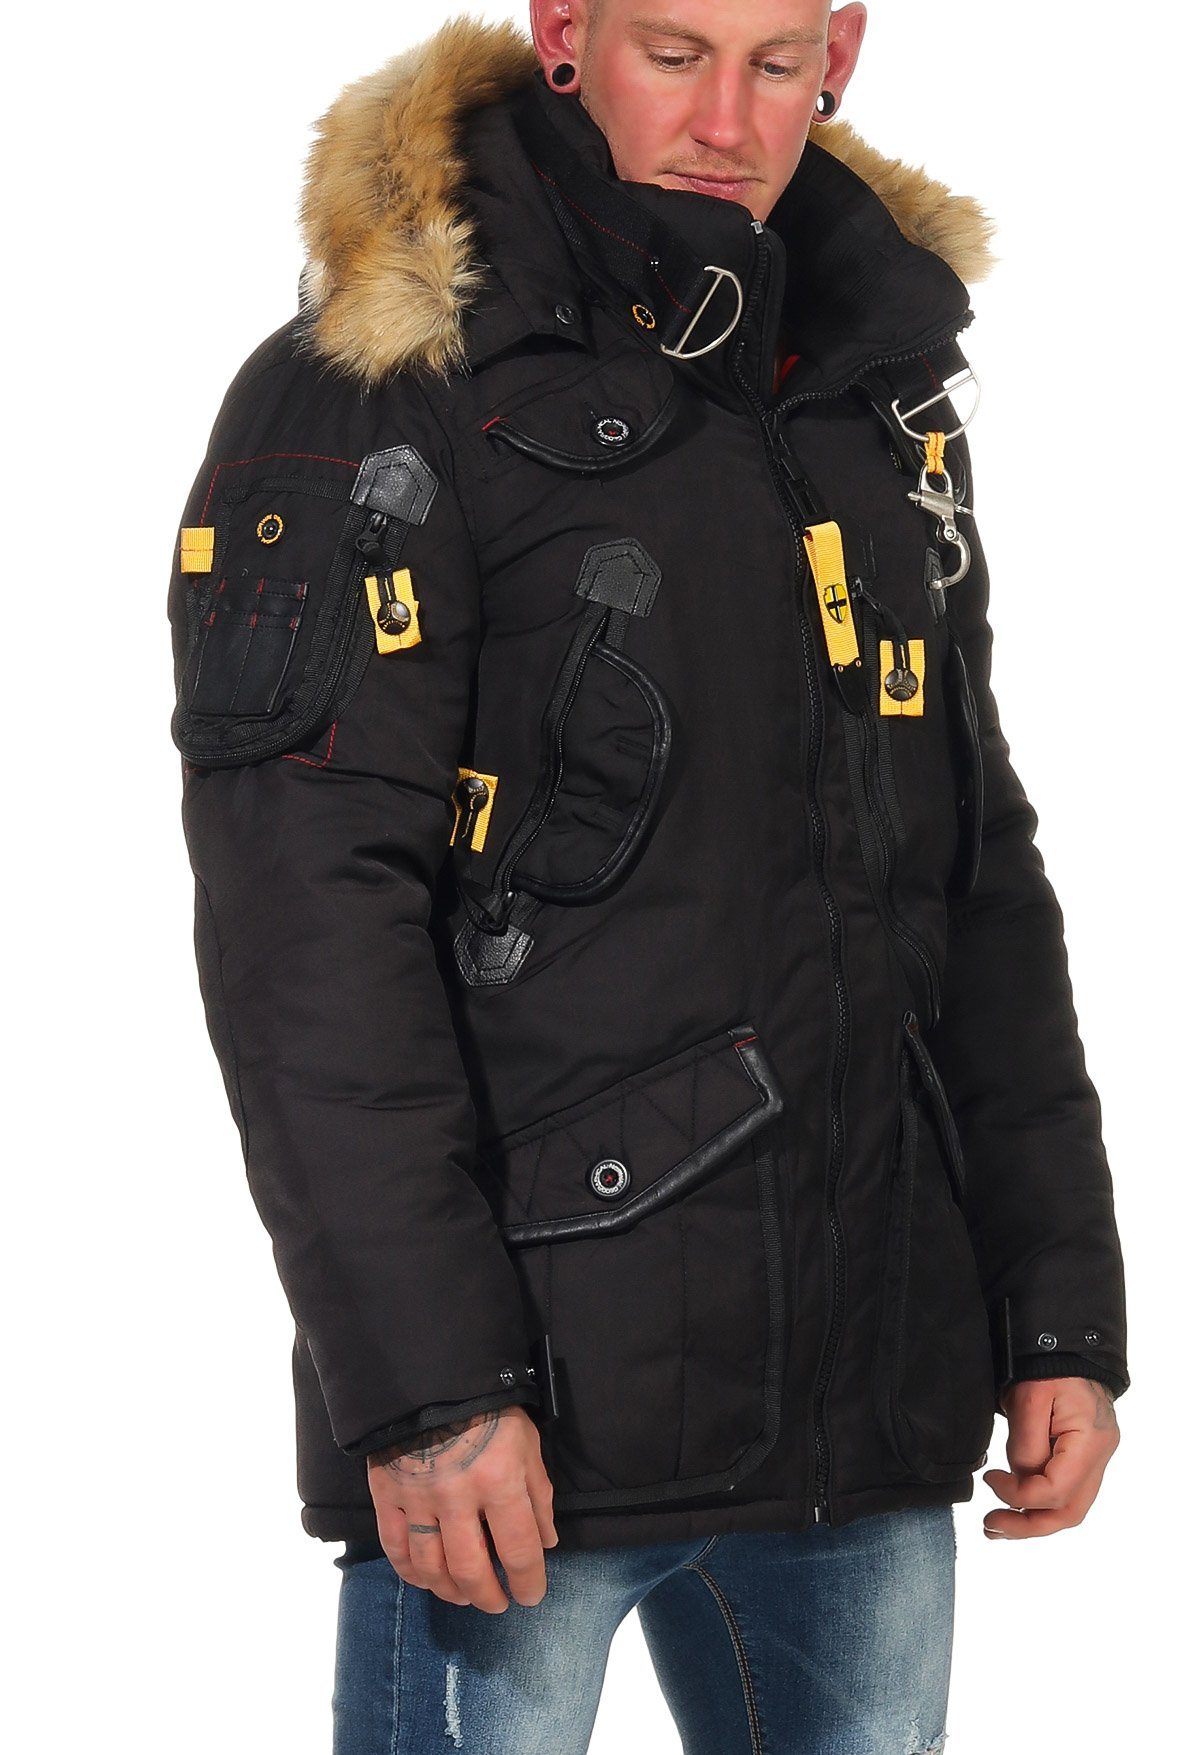 Agaros Taschen beides Kapuze Geographical Norway Fellbesatz: Winterjacke viele individuell mit abnehmbar, Schwarz